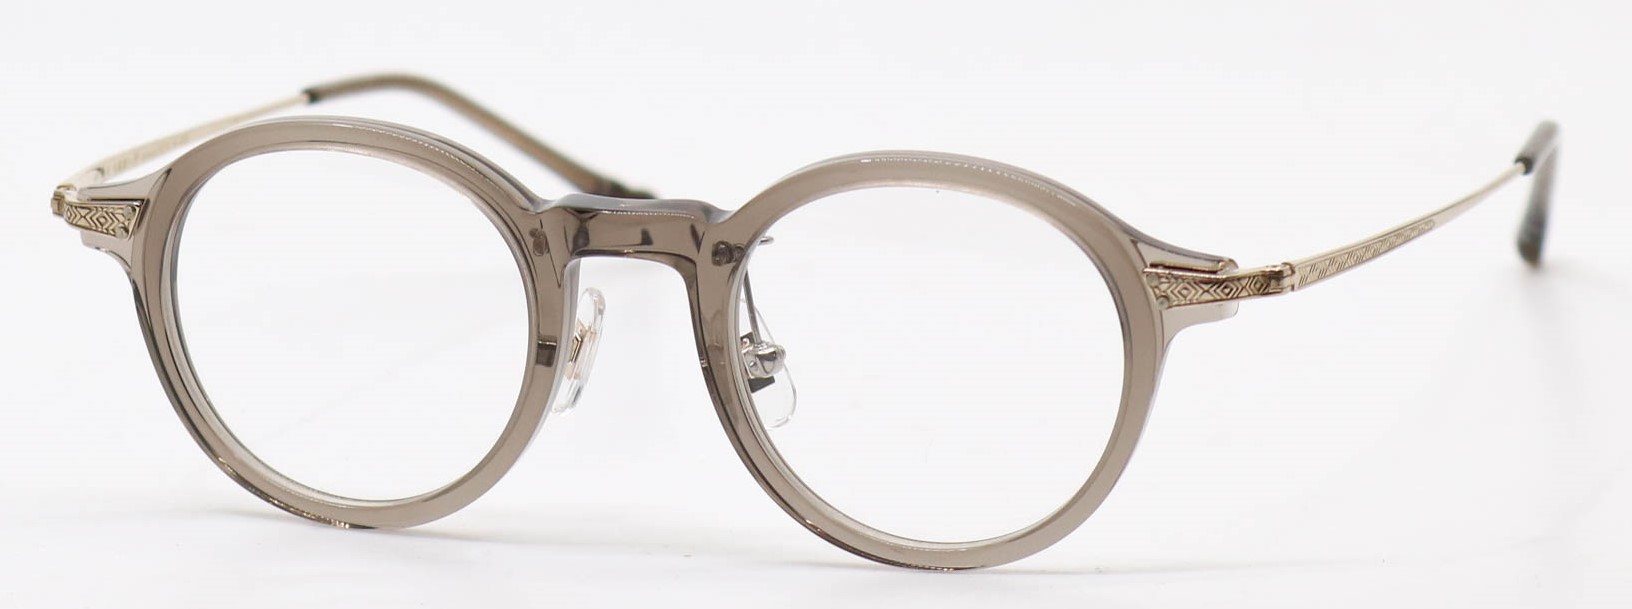 眼鏡のカラータイプC-4 Gray/Gold